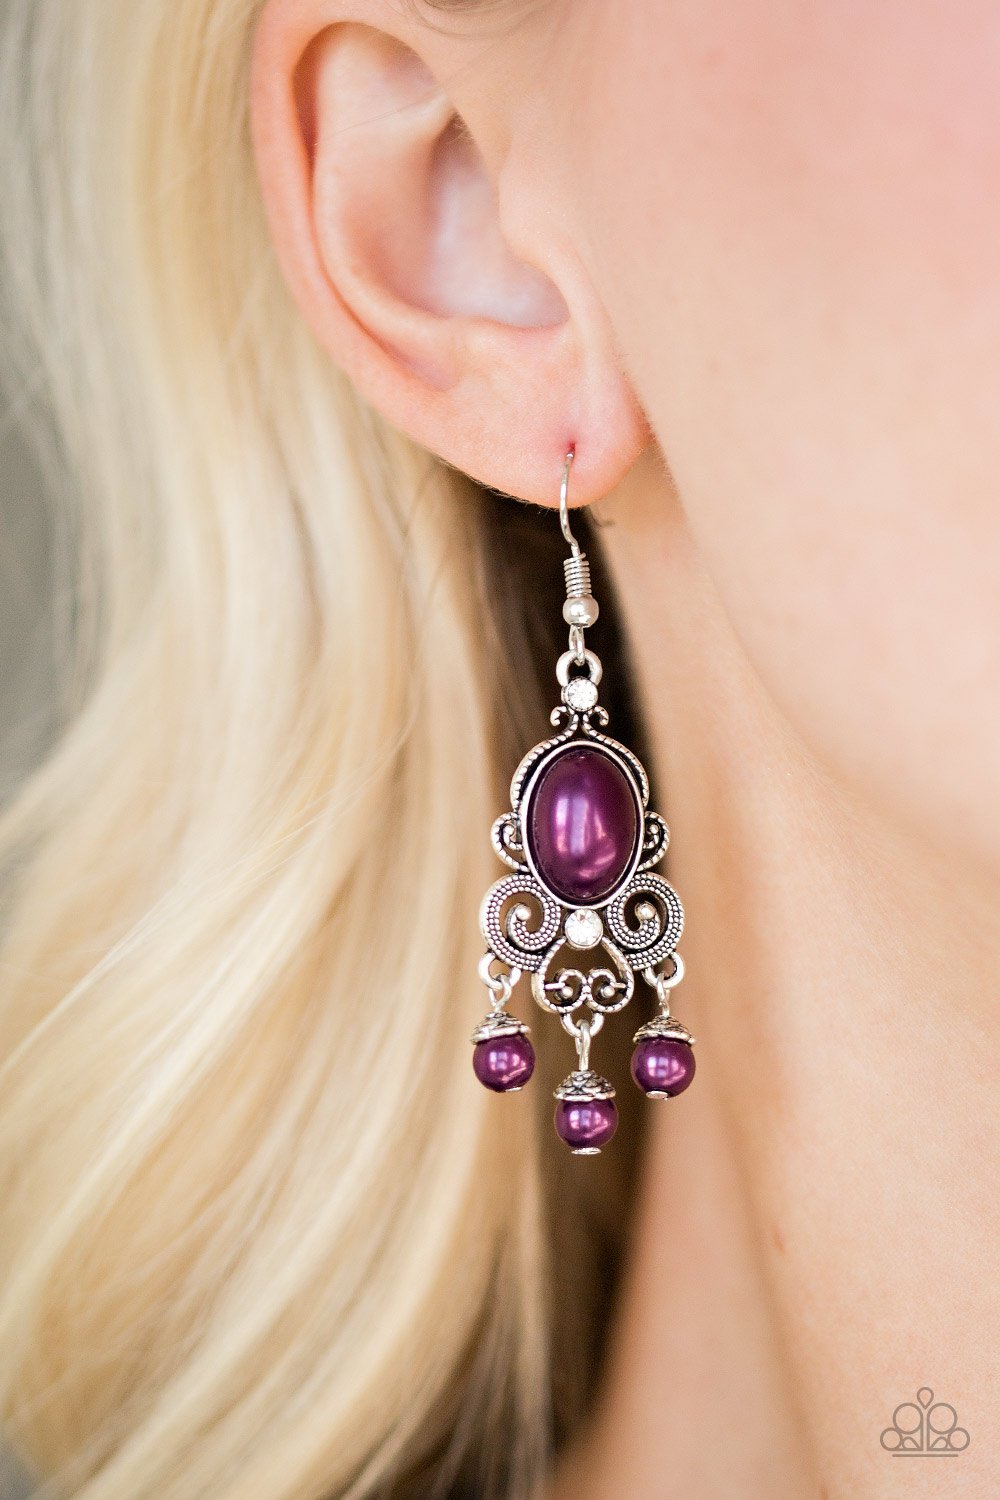 I Better Get Glowing-purple-Paparazzi earrings